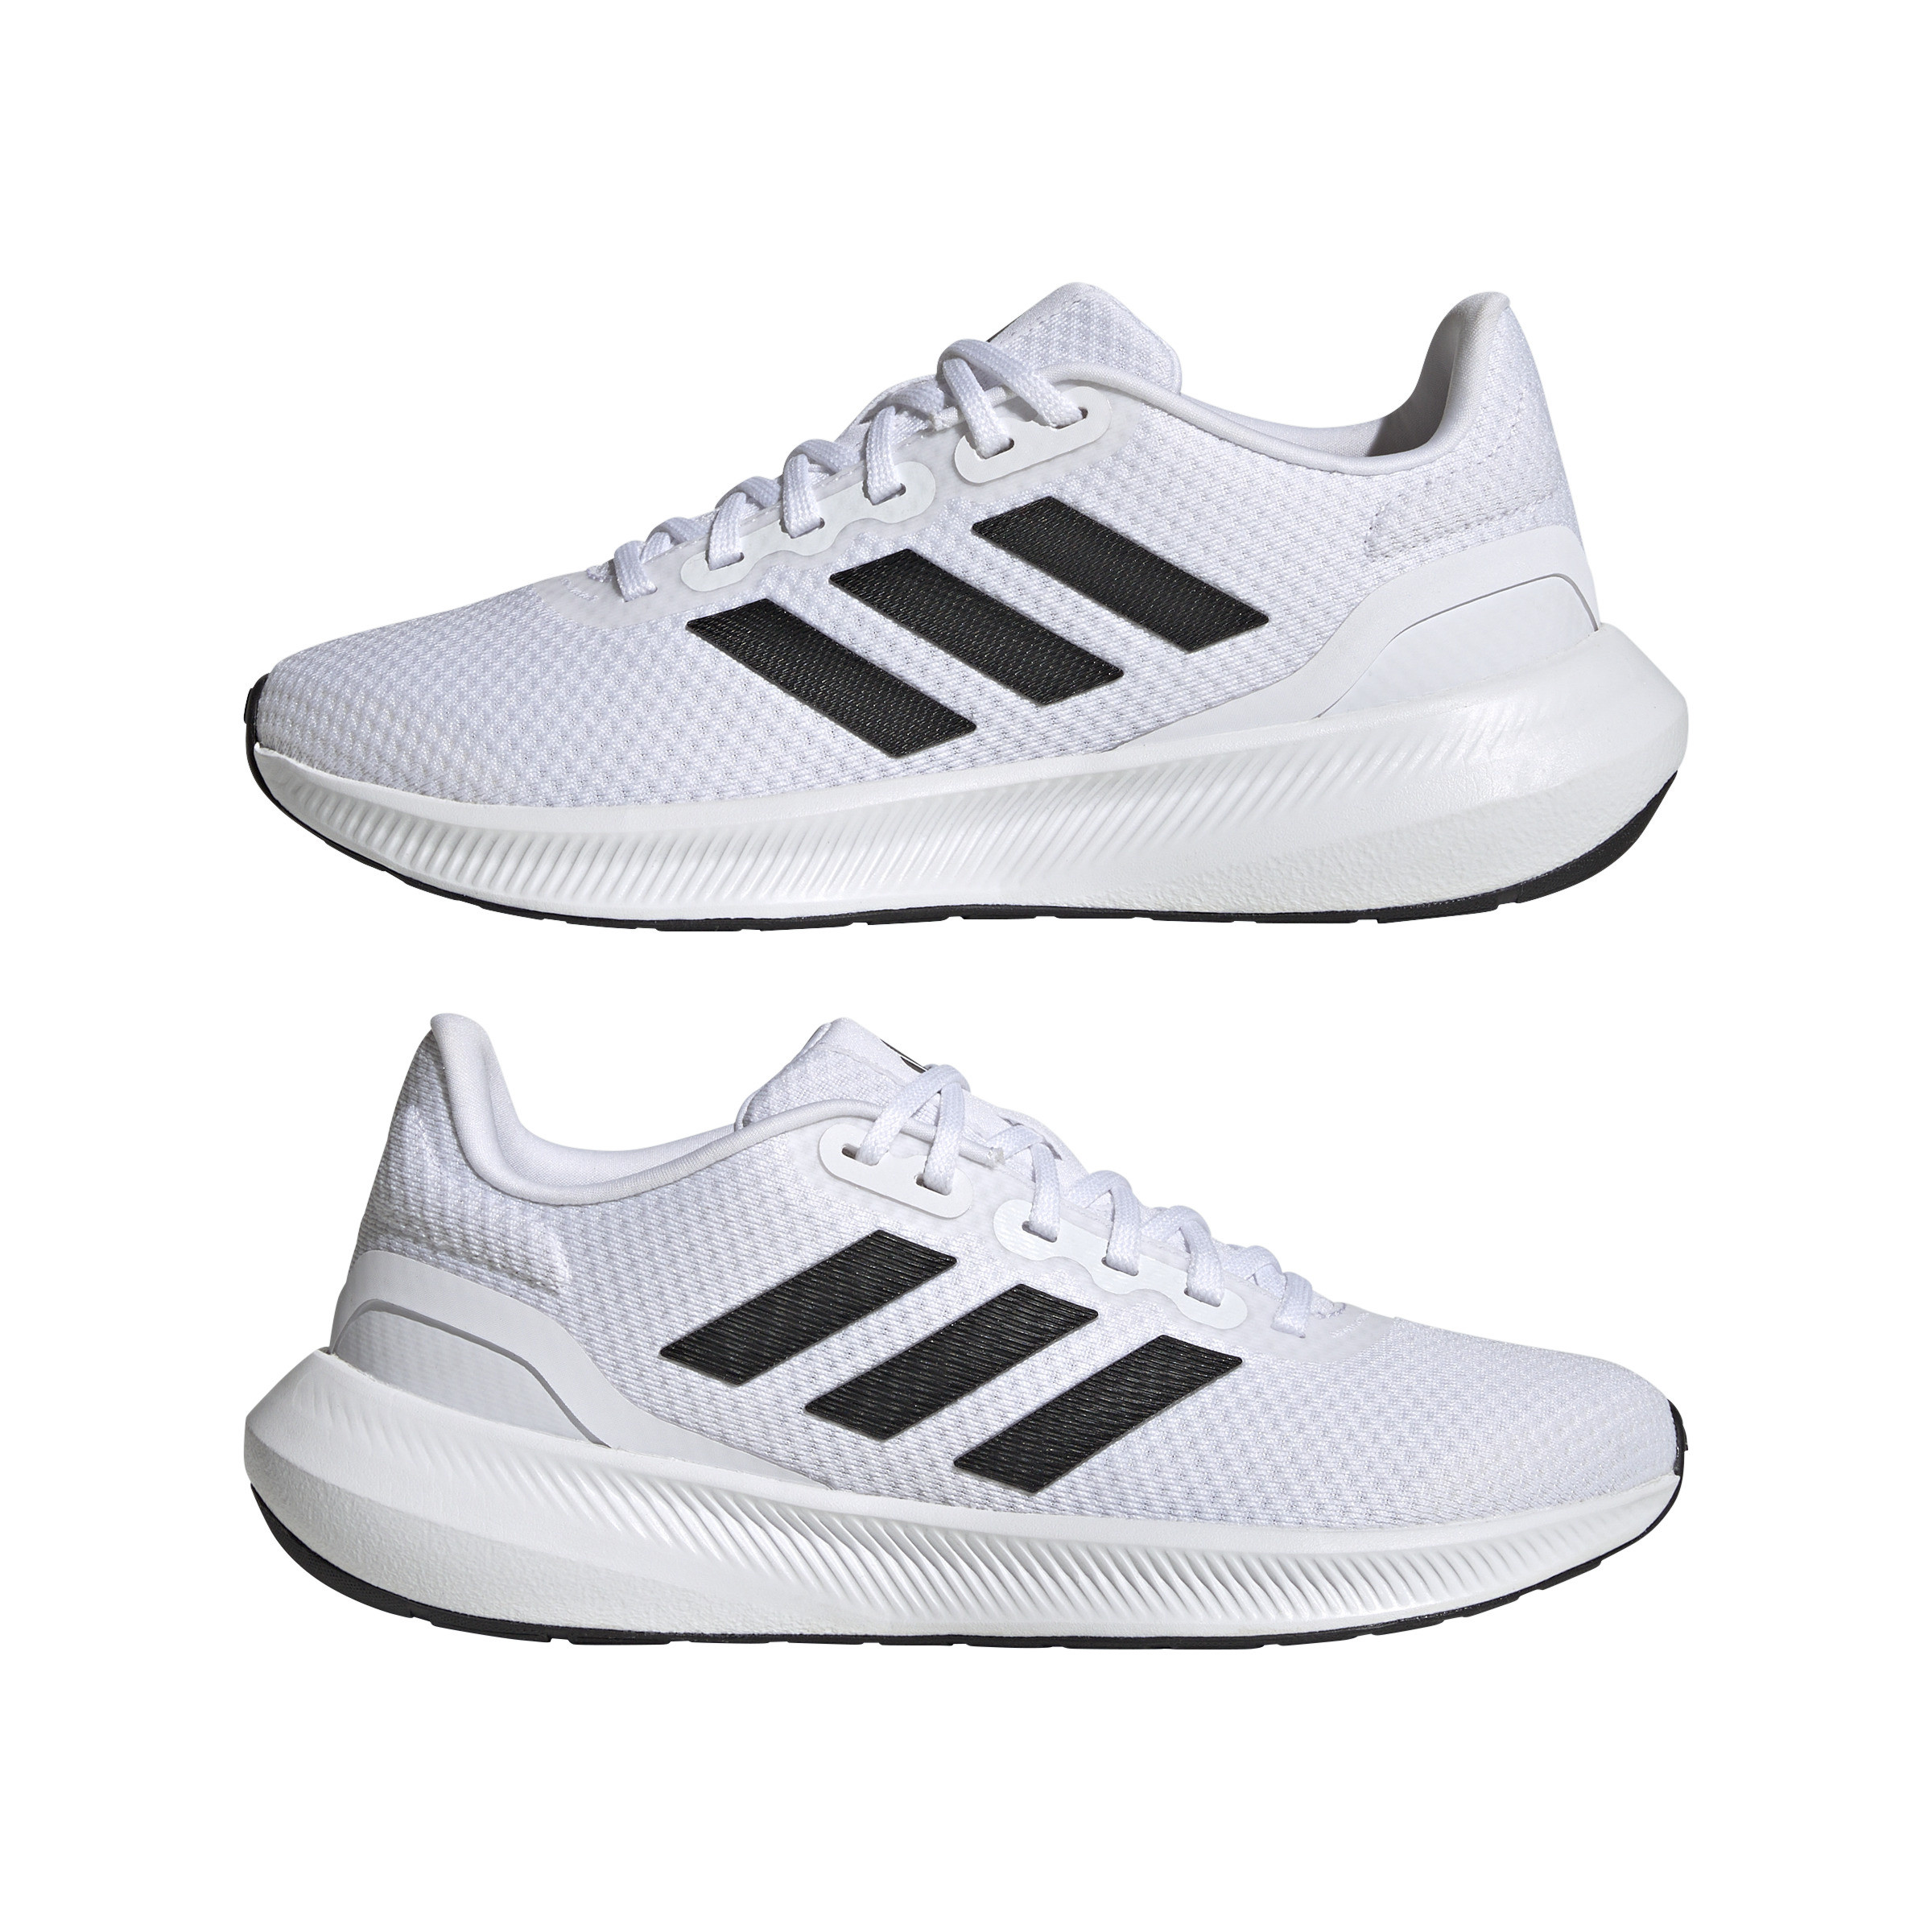 Adidas - Scarpe Runfalcon 3, Bianco, large image number 5